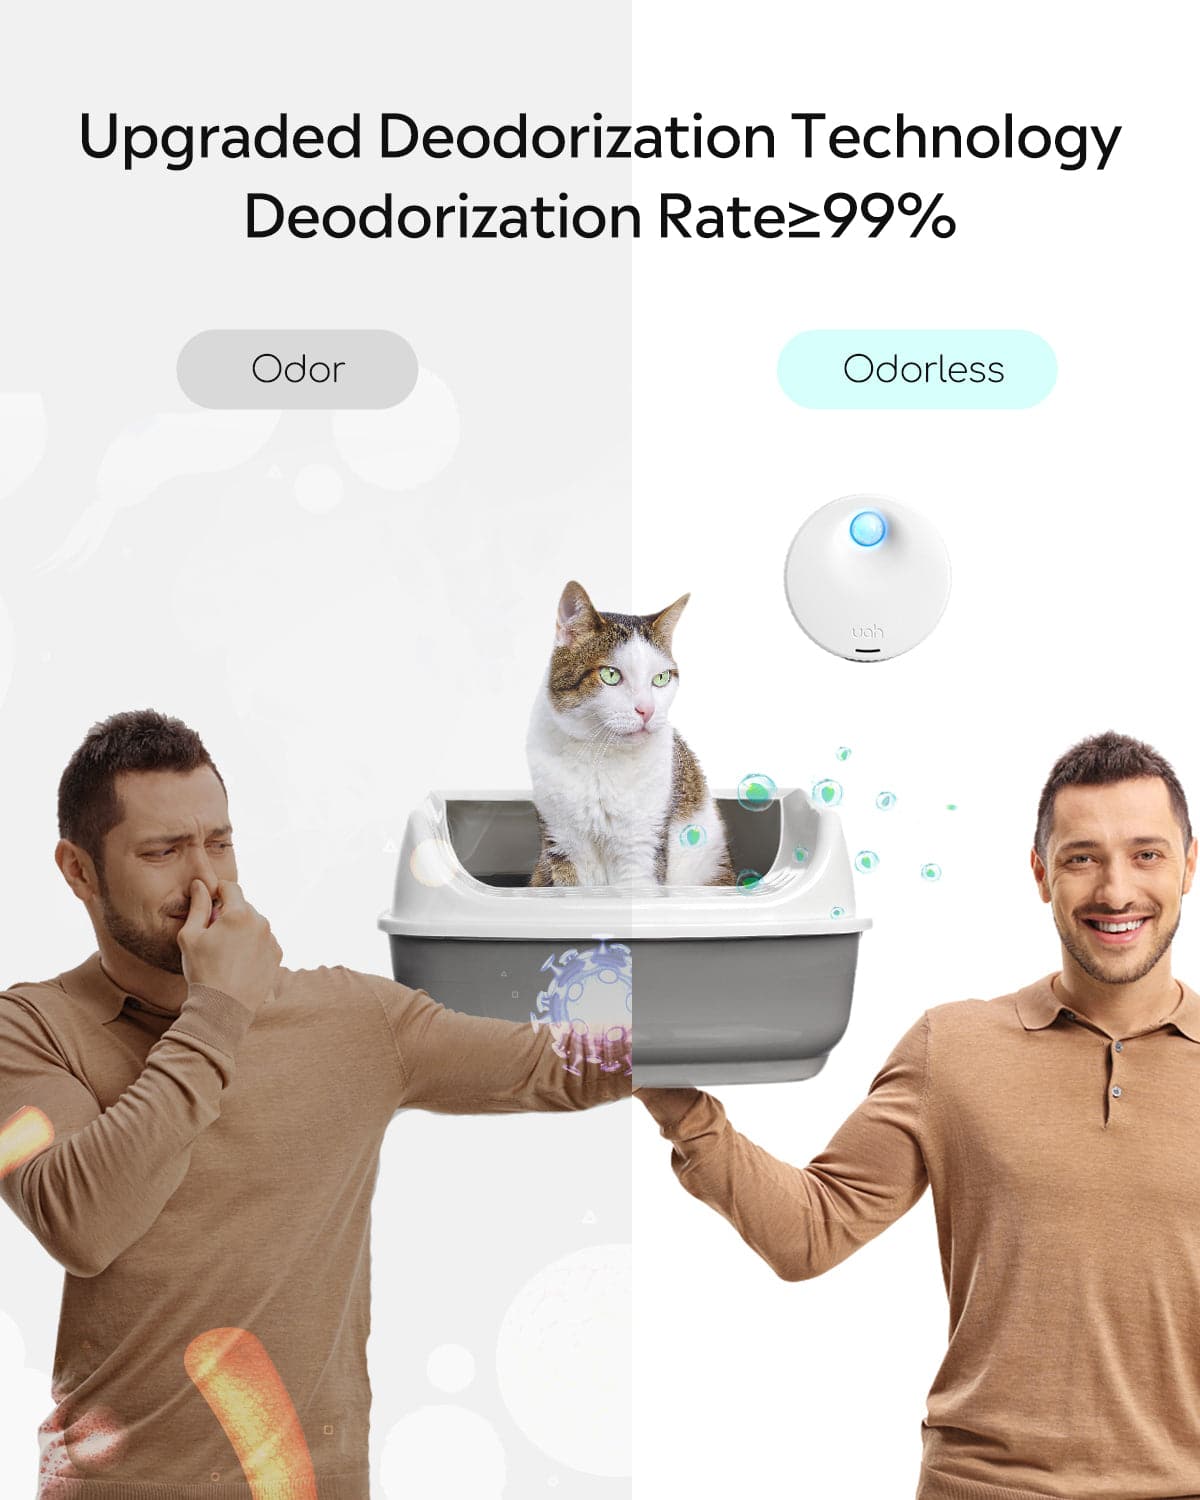 Uah Pet Smart Cat Litter Deodorizer